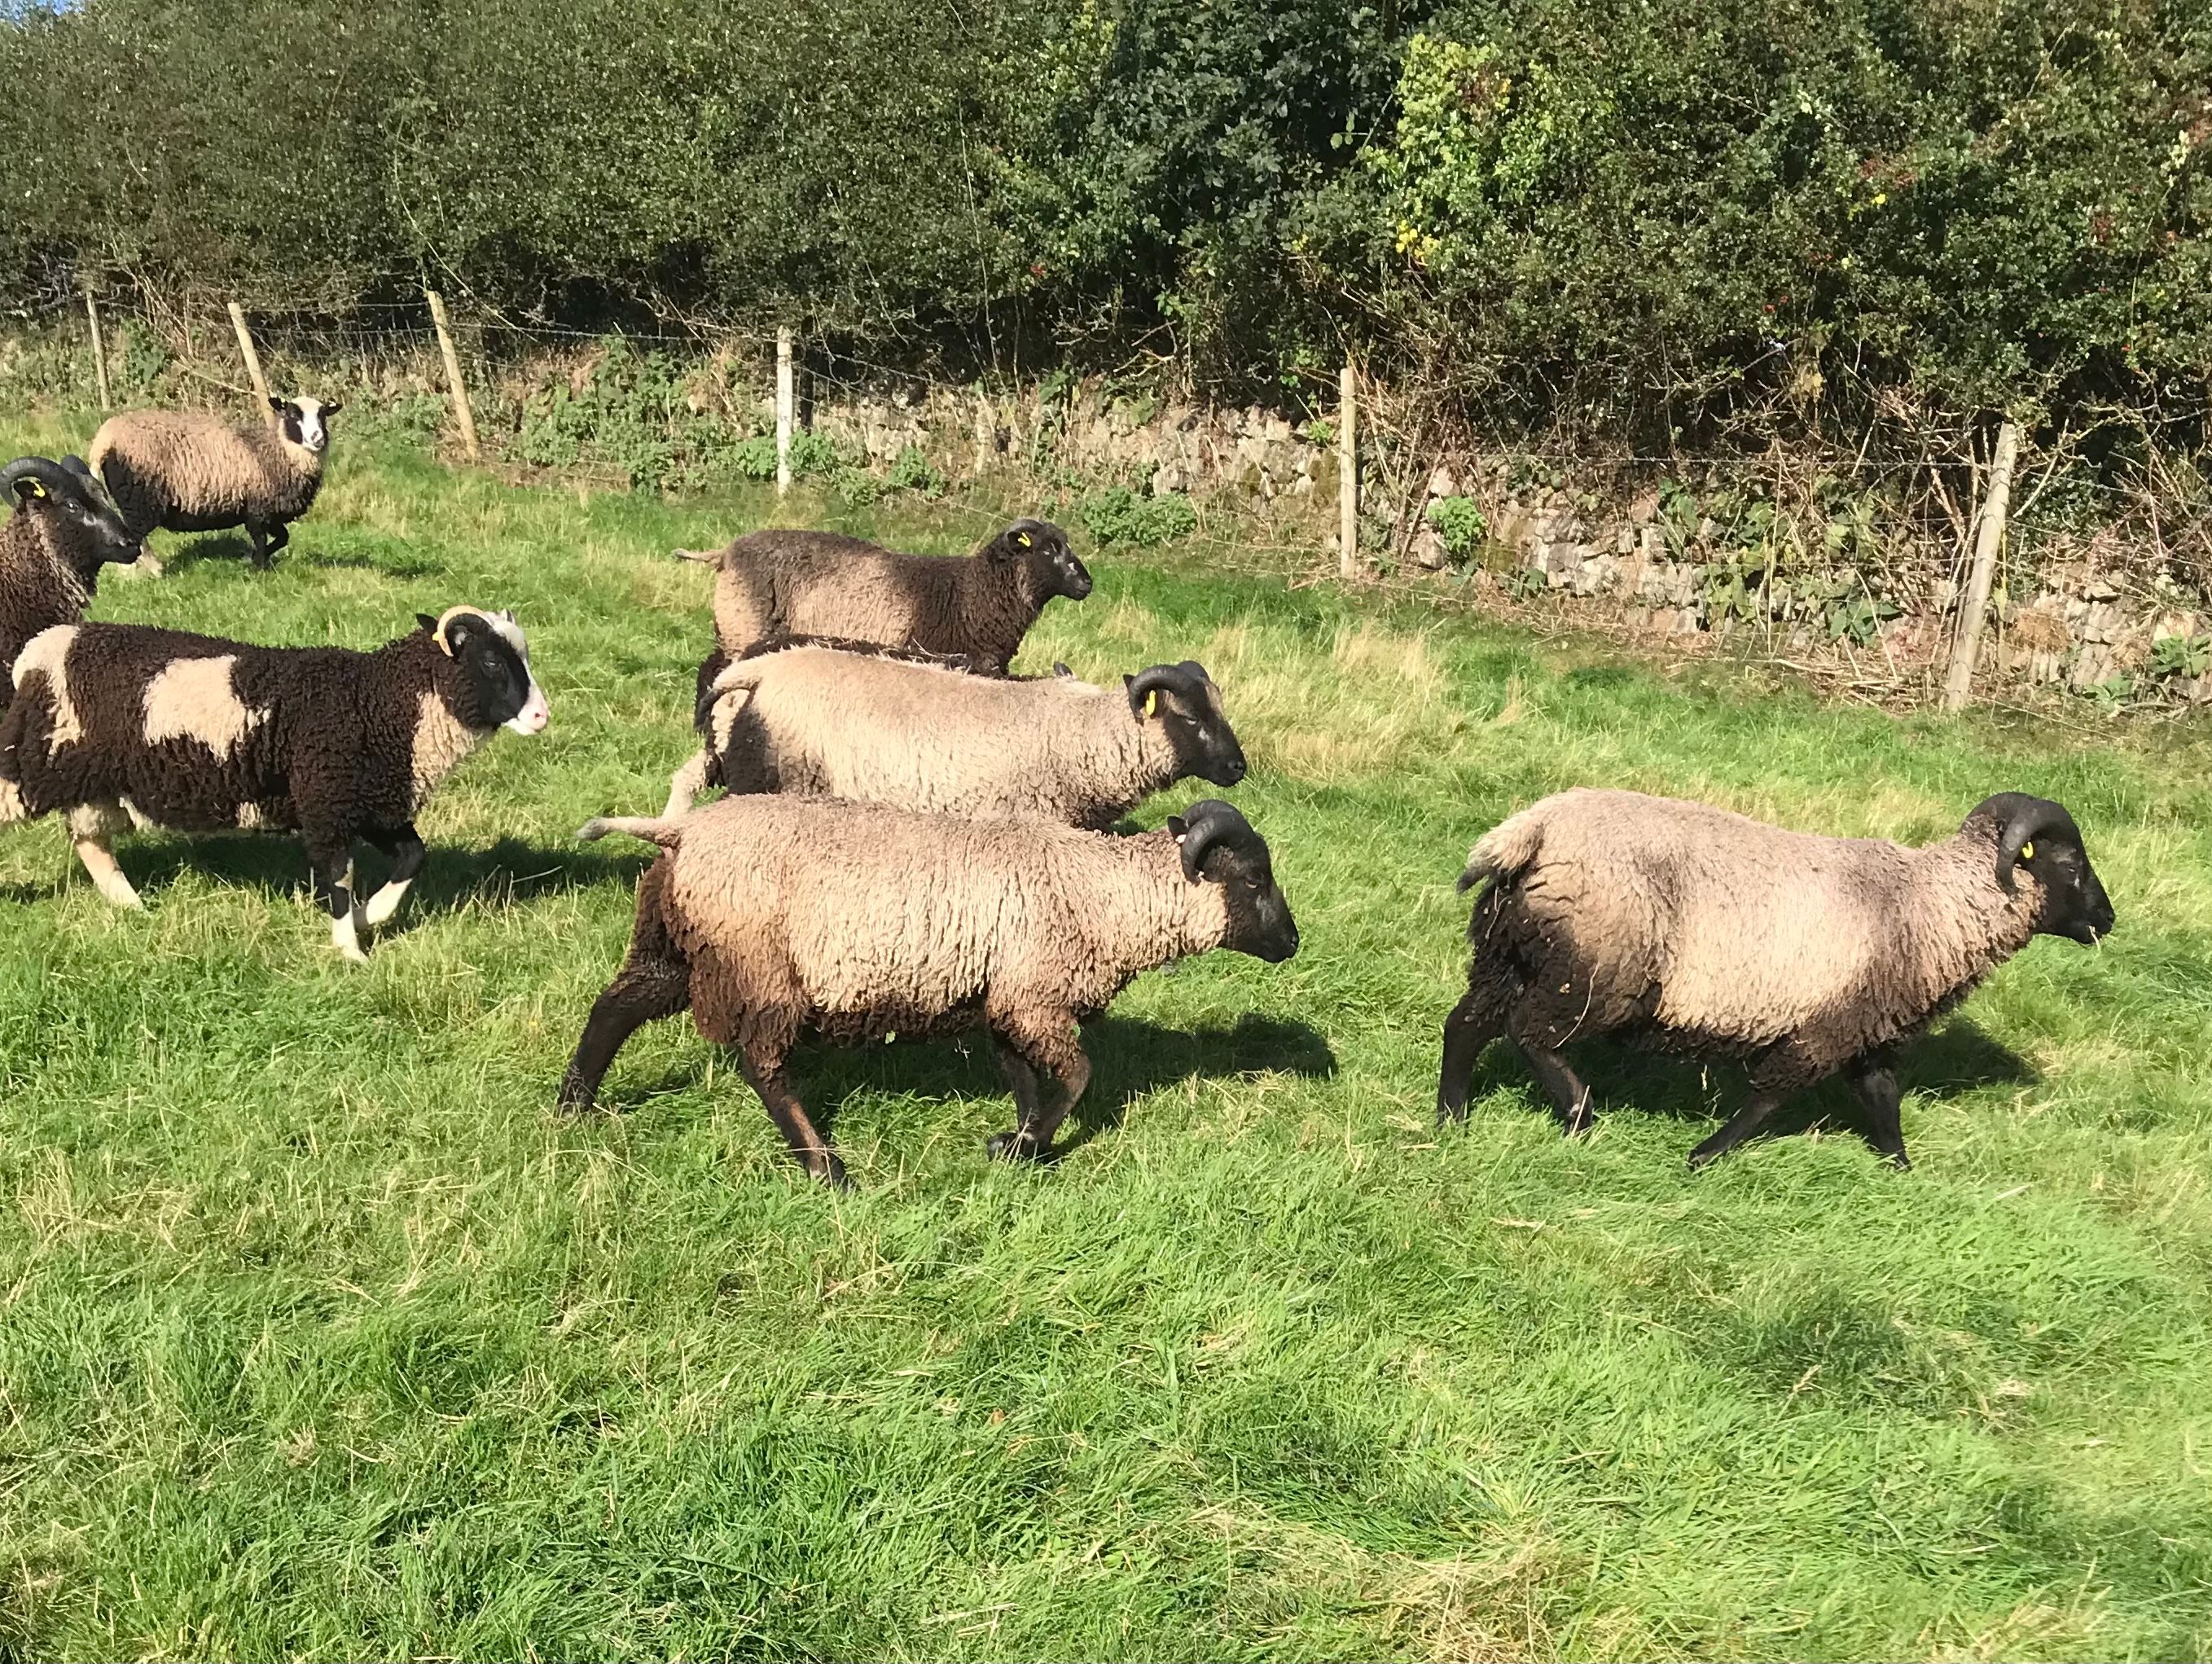 Ram lambs